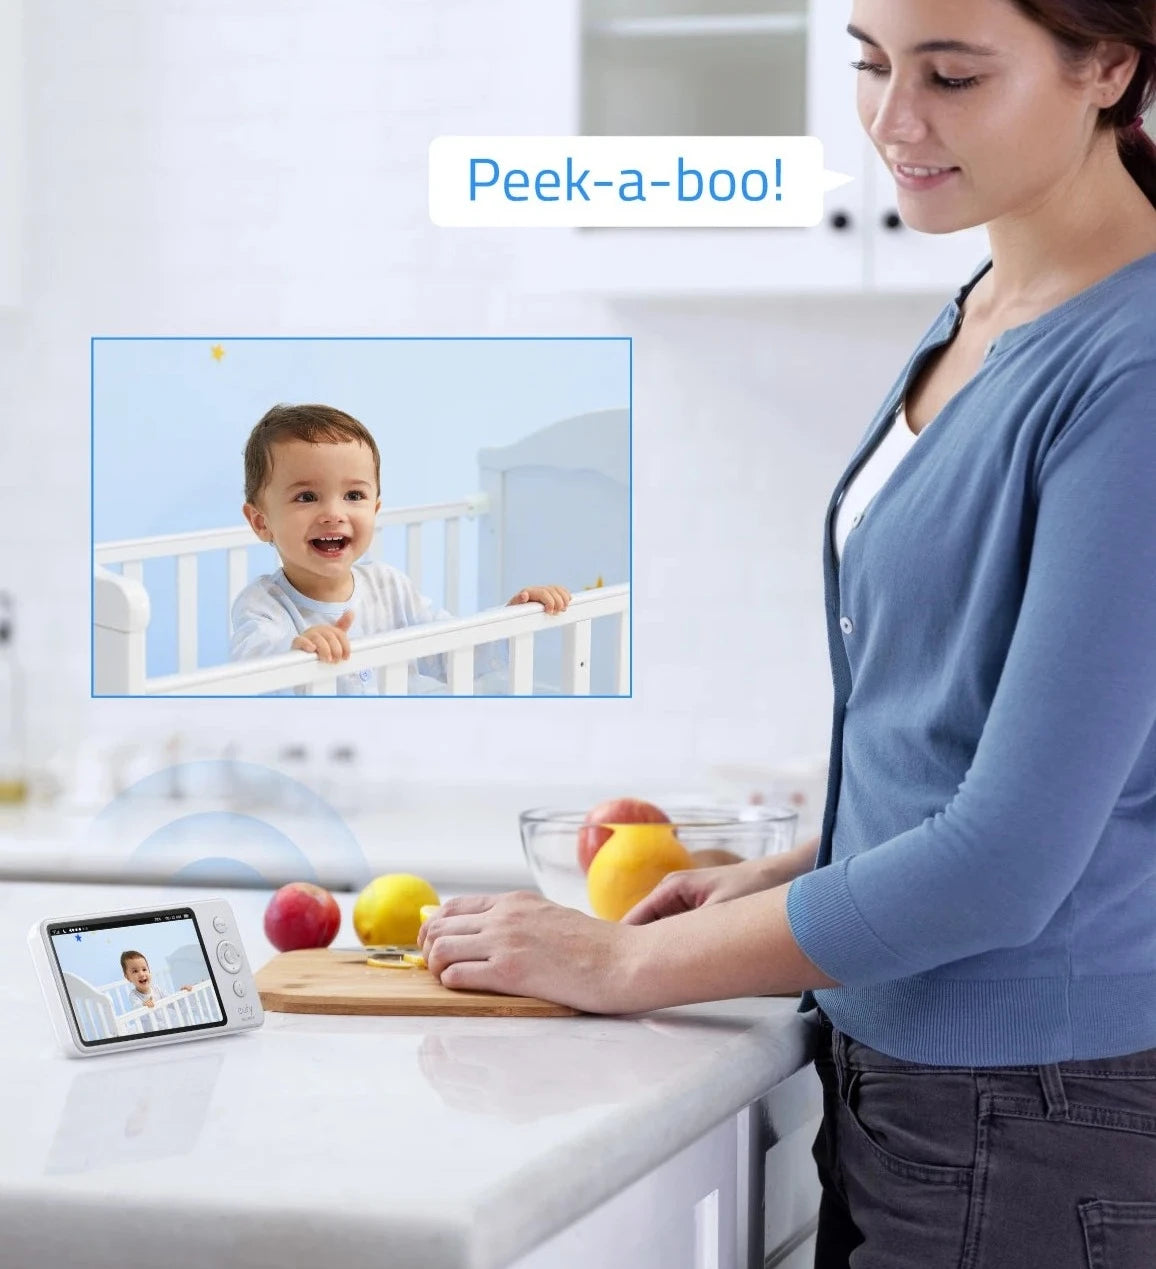 Moniteur vidéo de sécurité pour bébé eufy - Surveillance audio, résolution HD 720p, 110°, sécurité, lecteur berceuse, vision nocturne - iHome-Smart